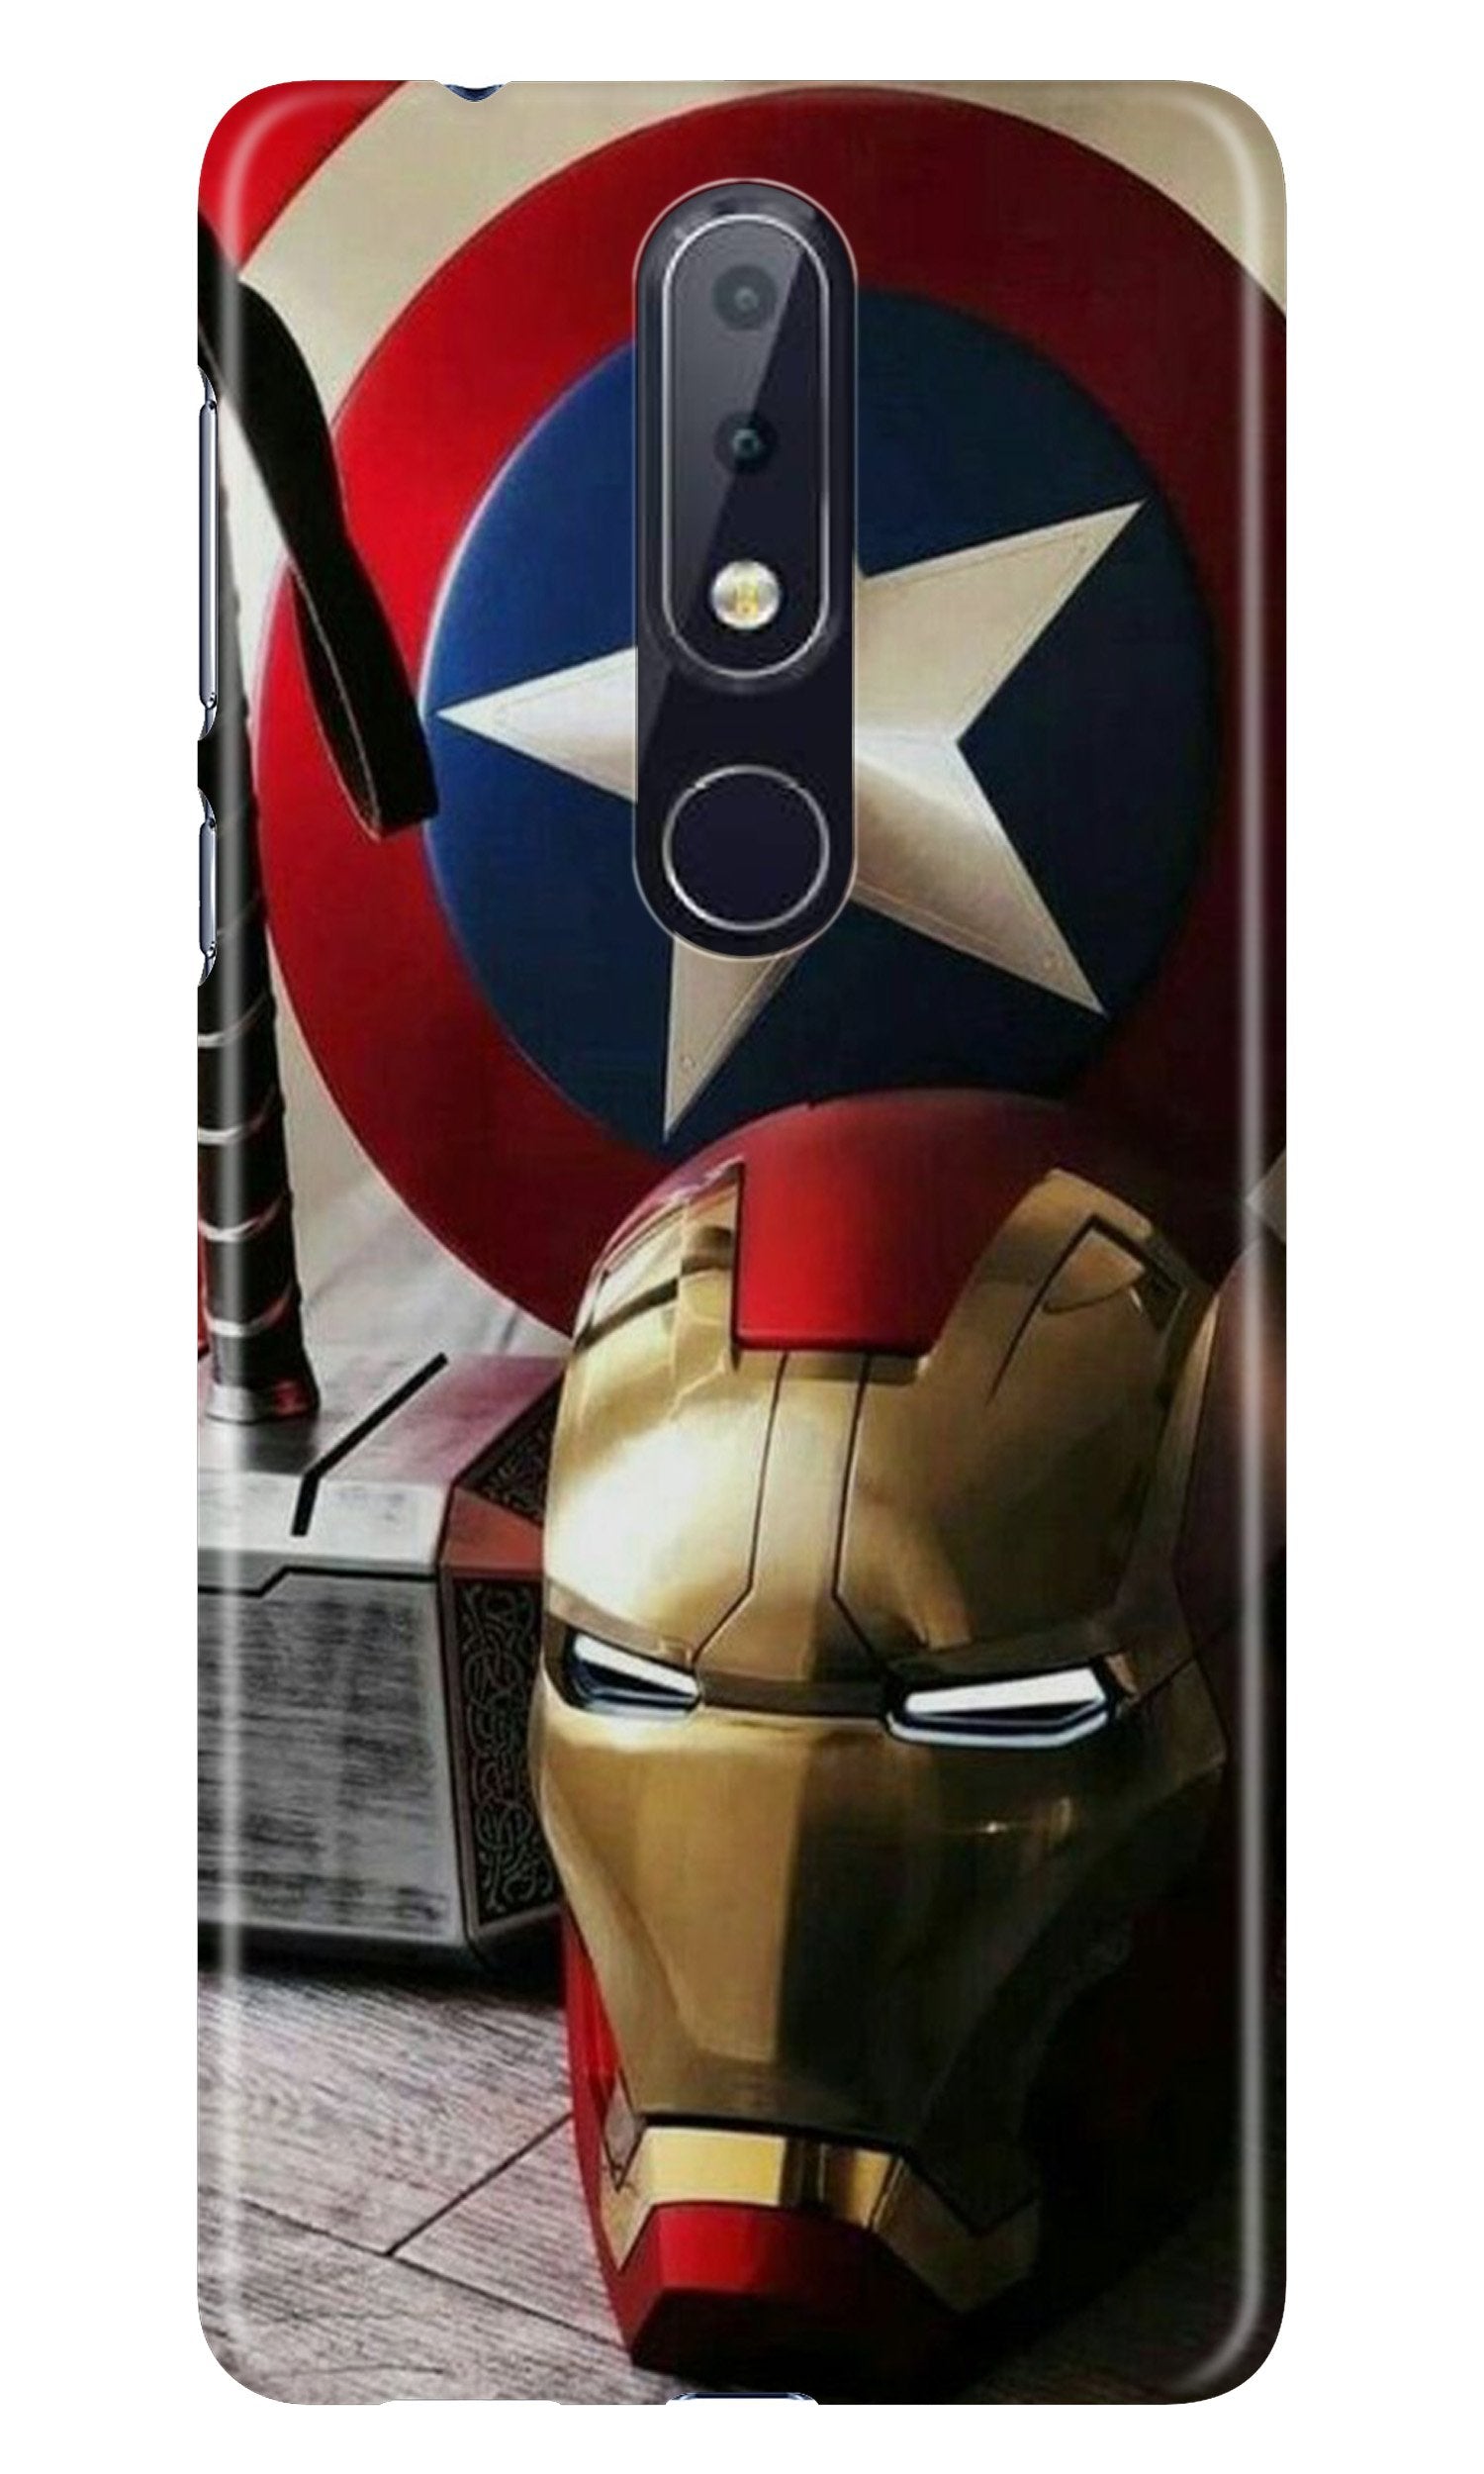 Ironman Captain America Case for Nokia 4.2 (Design No. 254)